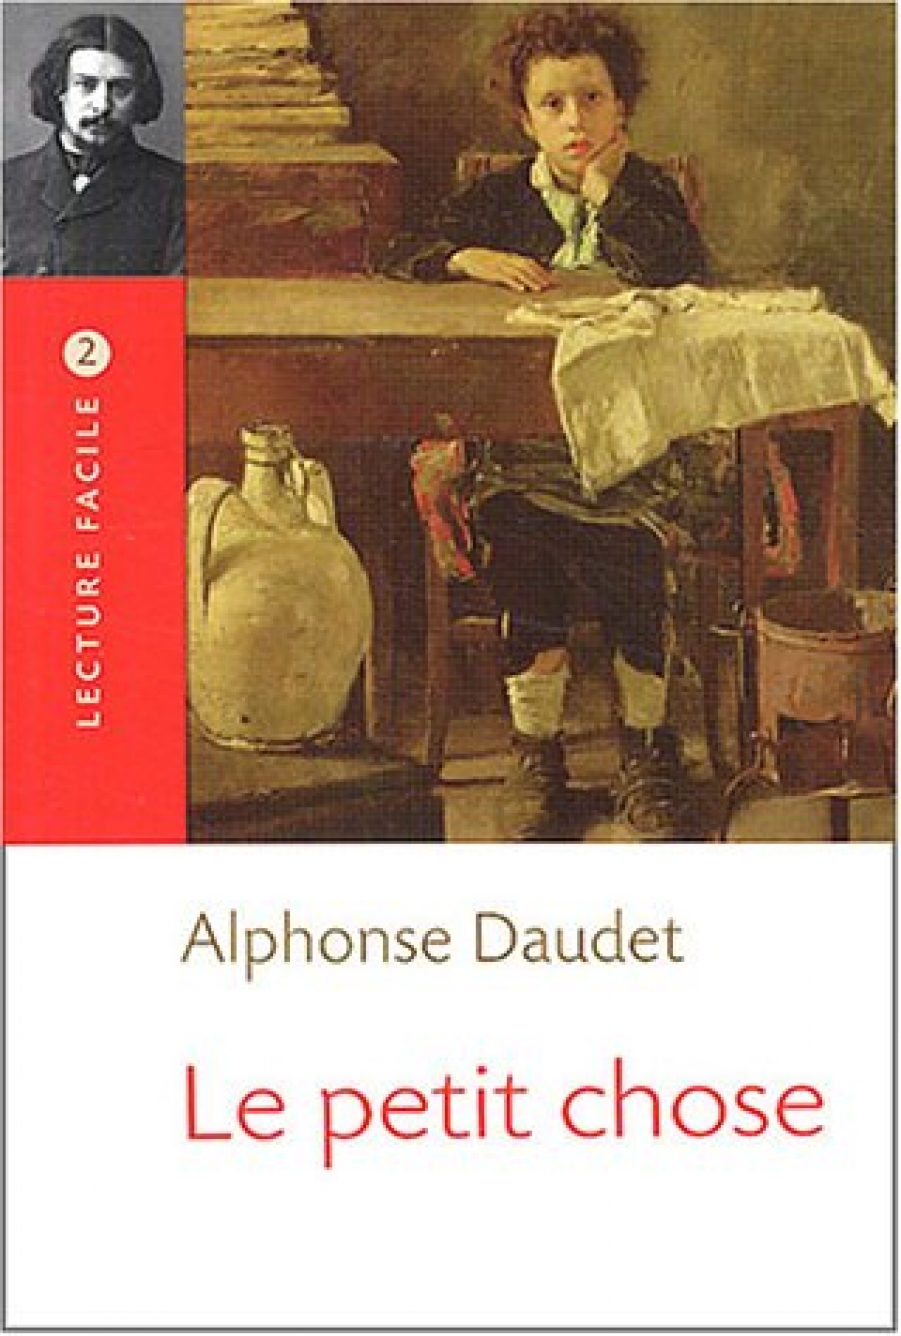 Alphonse D. Le Petit chose (Daudet) 